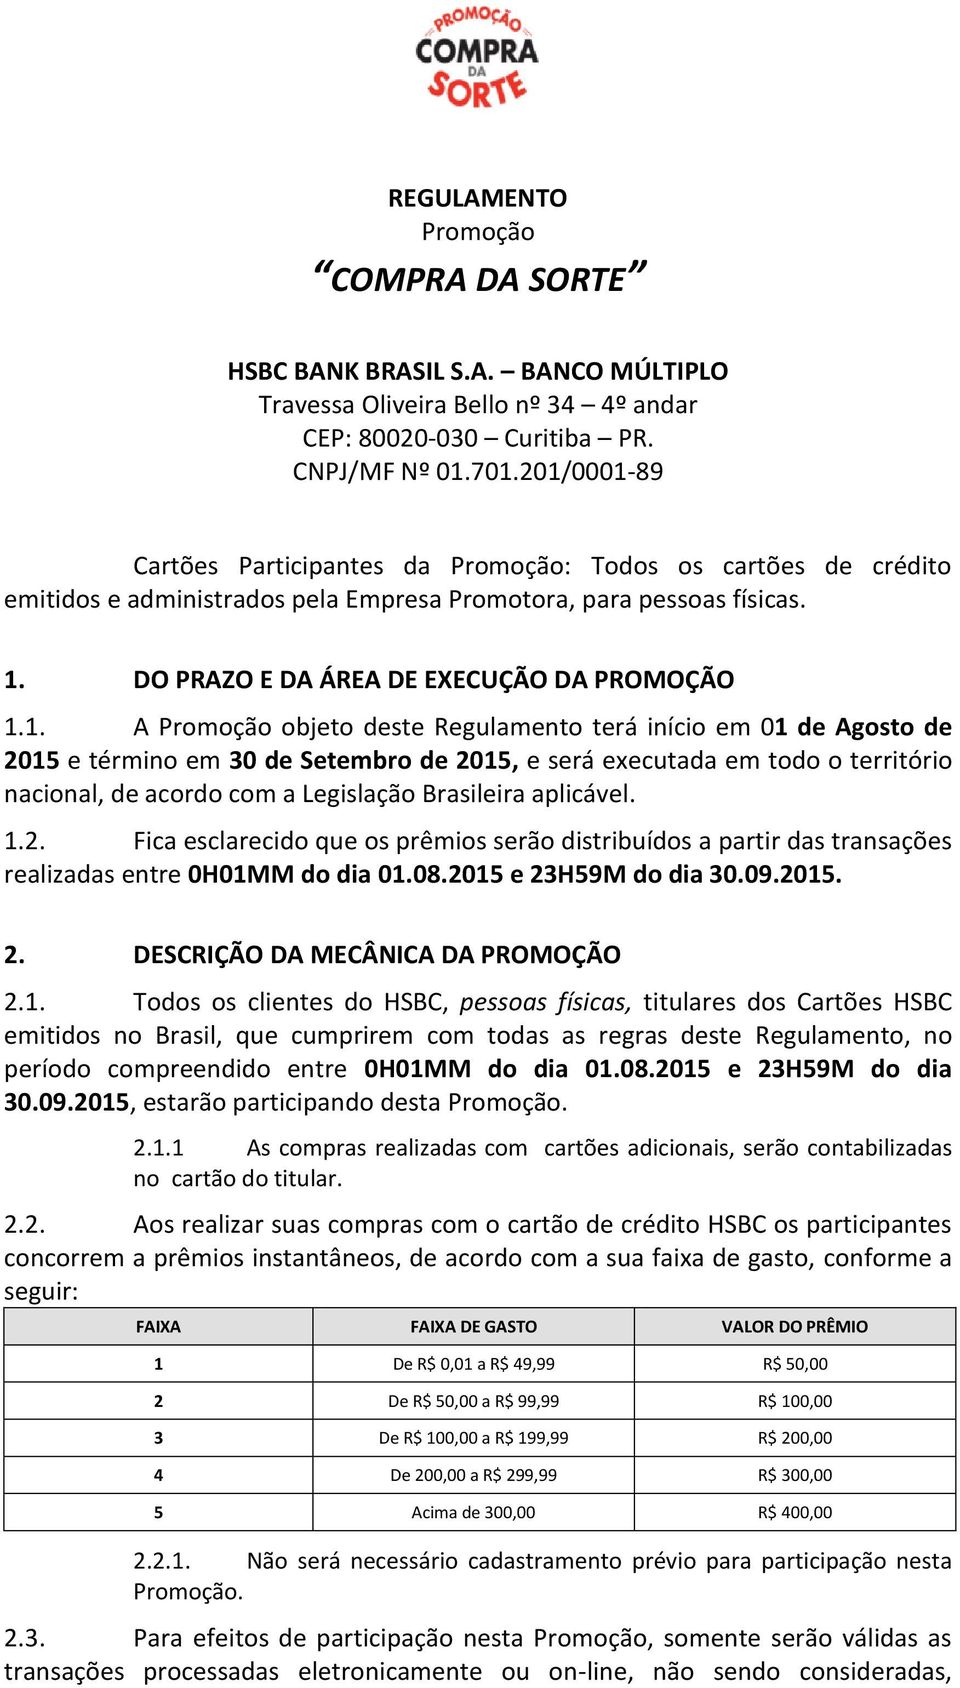 Promoção objeto deste Regulamento terá início em 01 de Agosto de 2015 e término em 30 de Setembro de 2015, e será executada em todo o território nacional, de acordo com a Legislação Brasileira